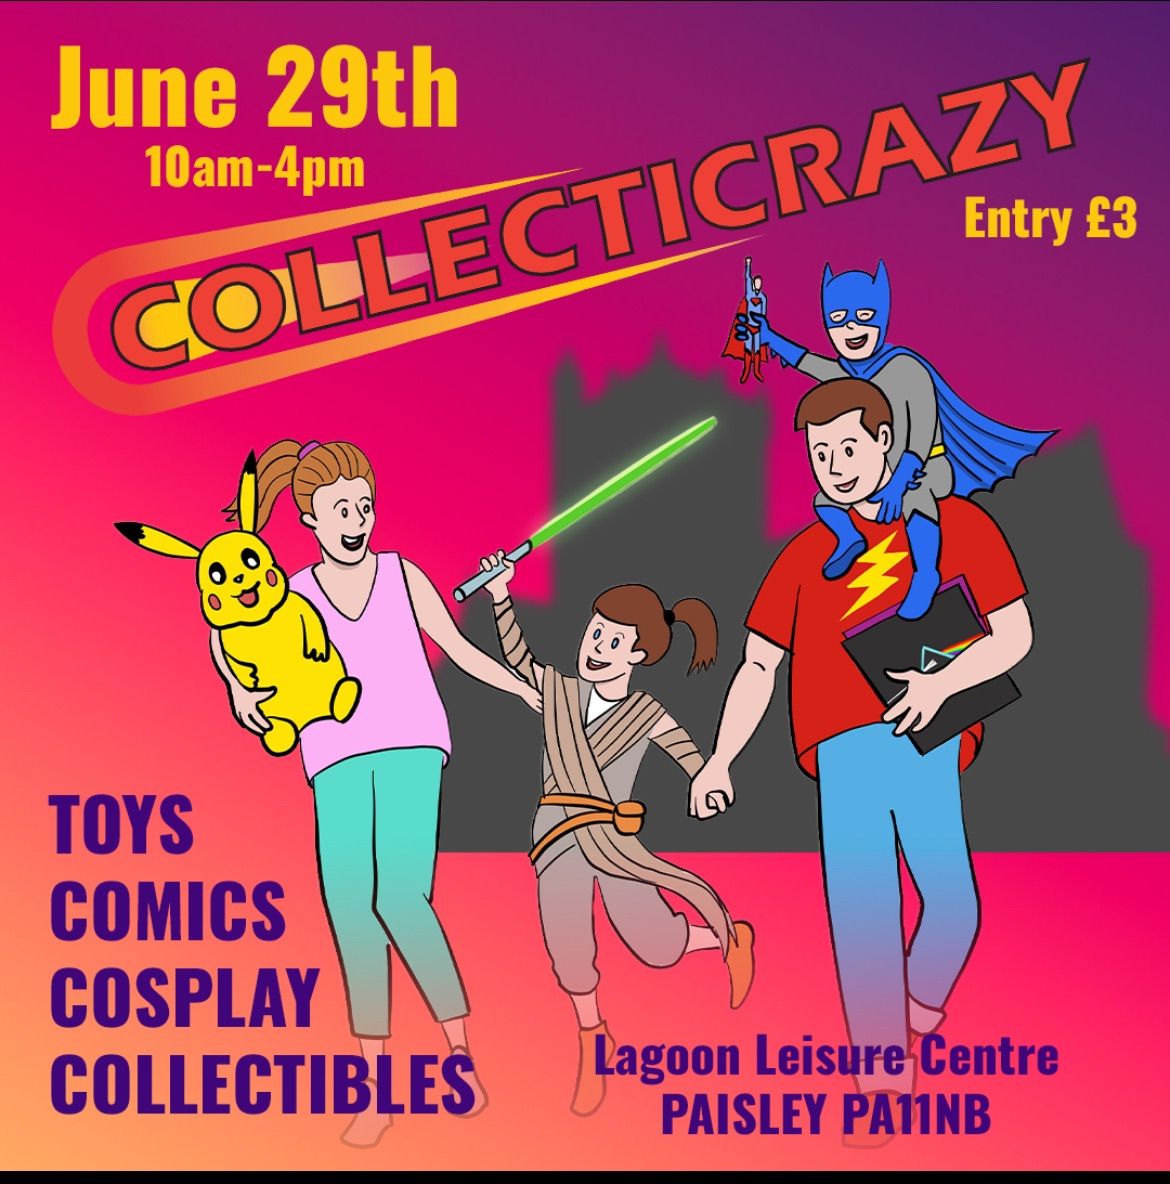 Collecticrazy Collectibles, Hobby & Toy Fair 